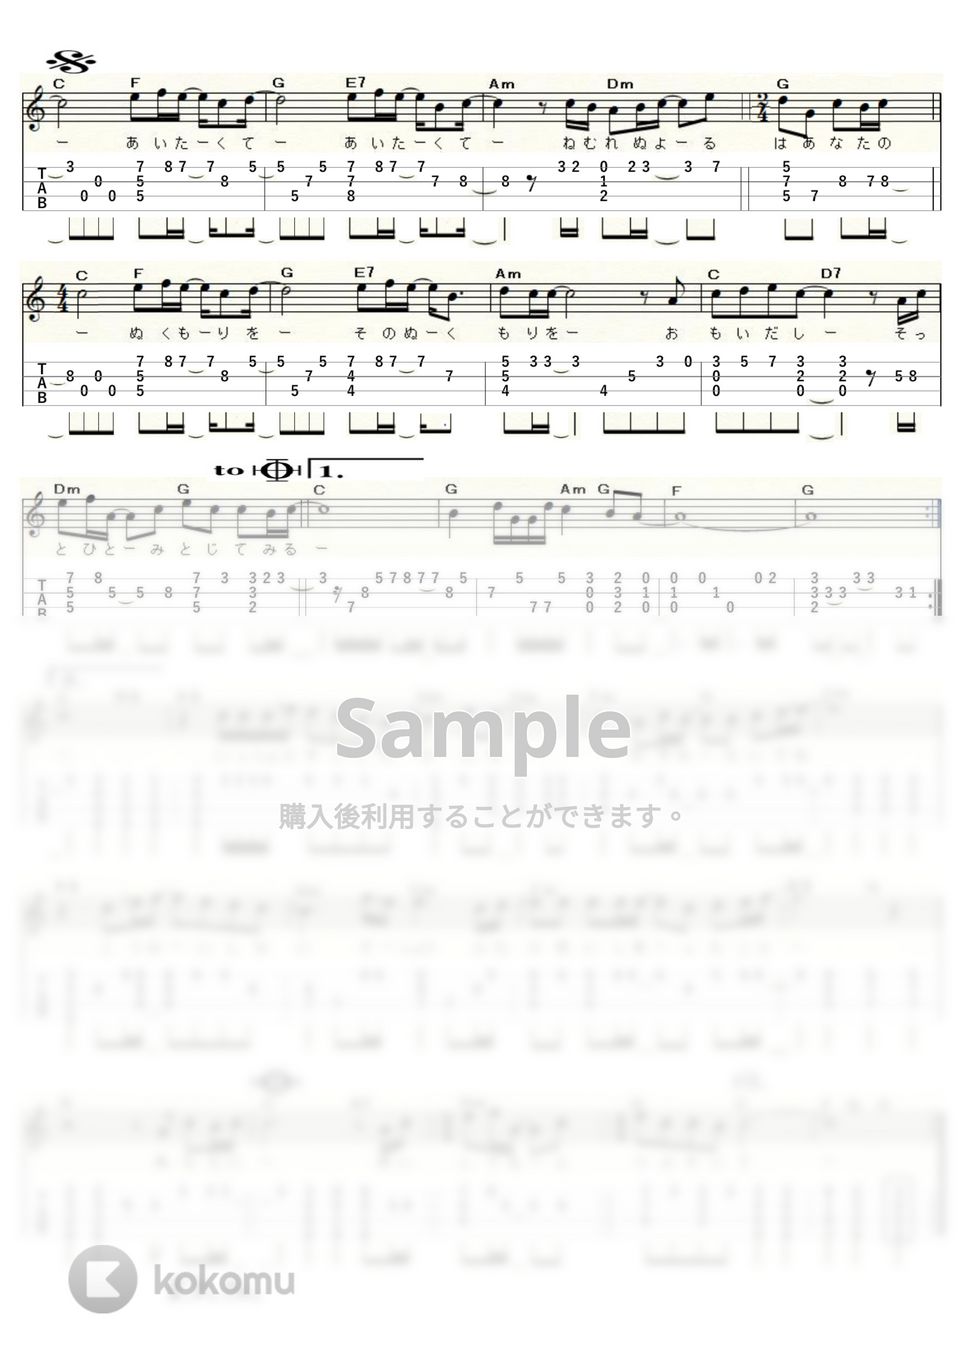 松田聖子 - あなたに逢いたくて~MISSING YOU~ (ｳｸﾚﾚｿﾛ/High-G,Low-G/中級) by ukulelepapa